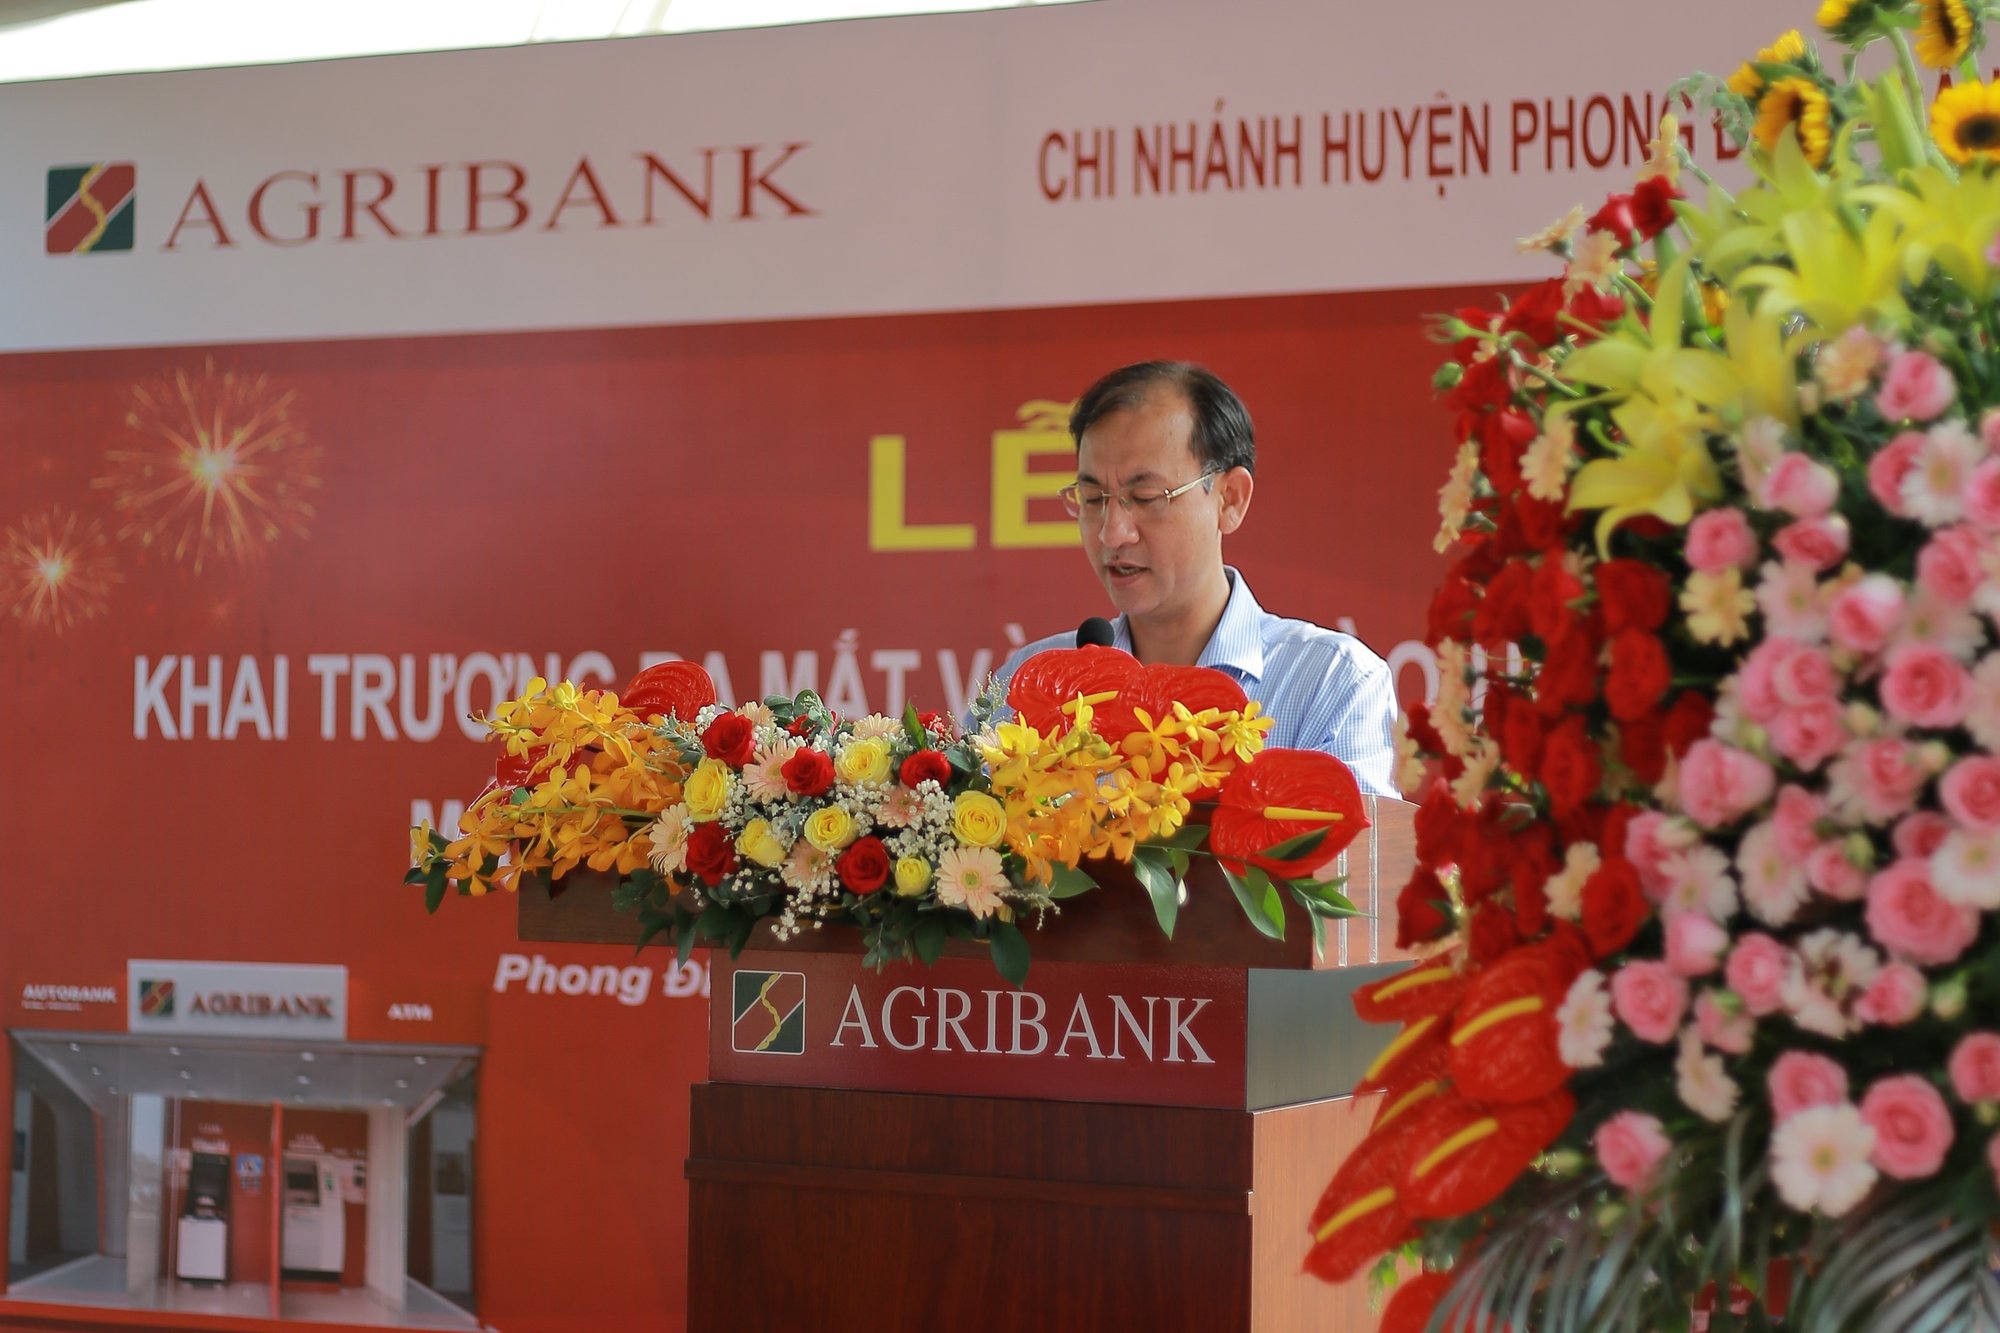 Agribank chi nhánh Phong Điền – Cần Thơ II đưa vào hoạt động máy ATM đa chức năng  - Ảnh 3.